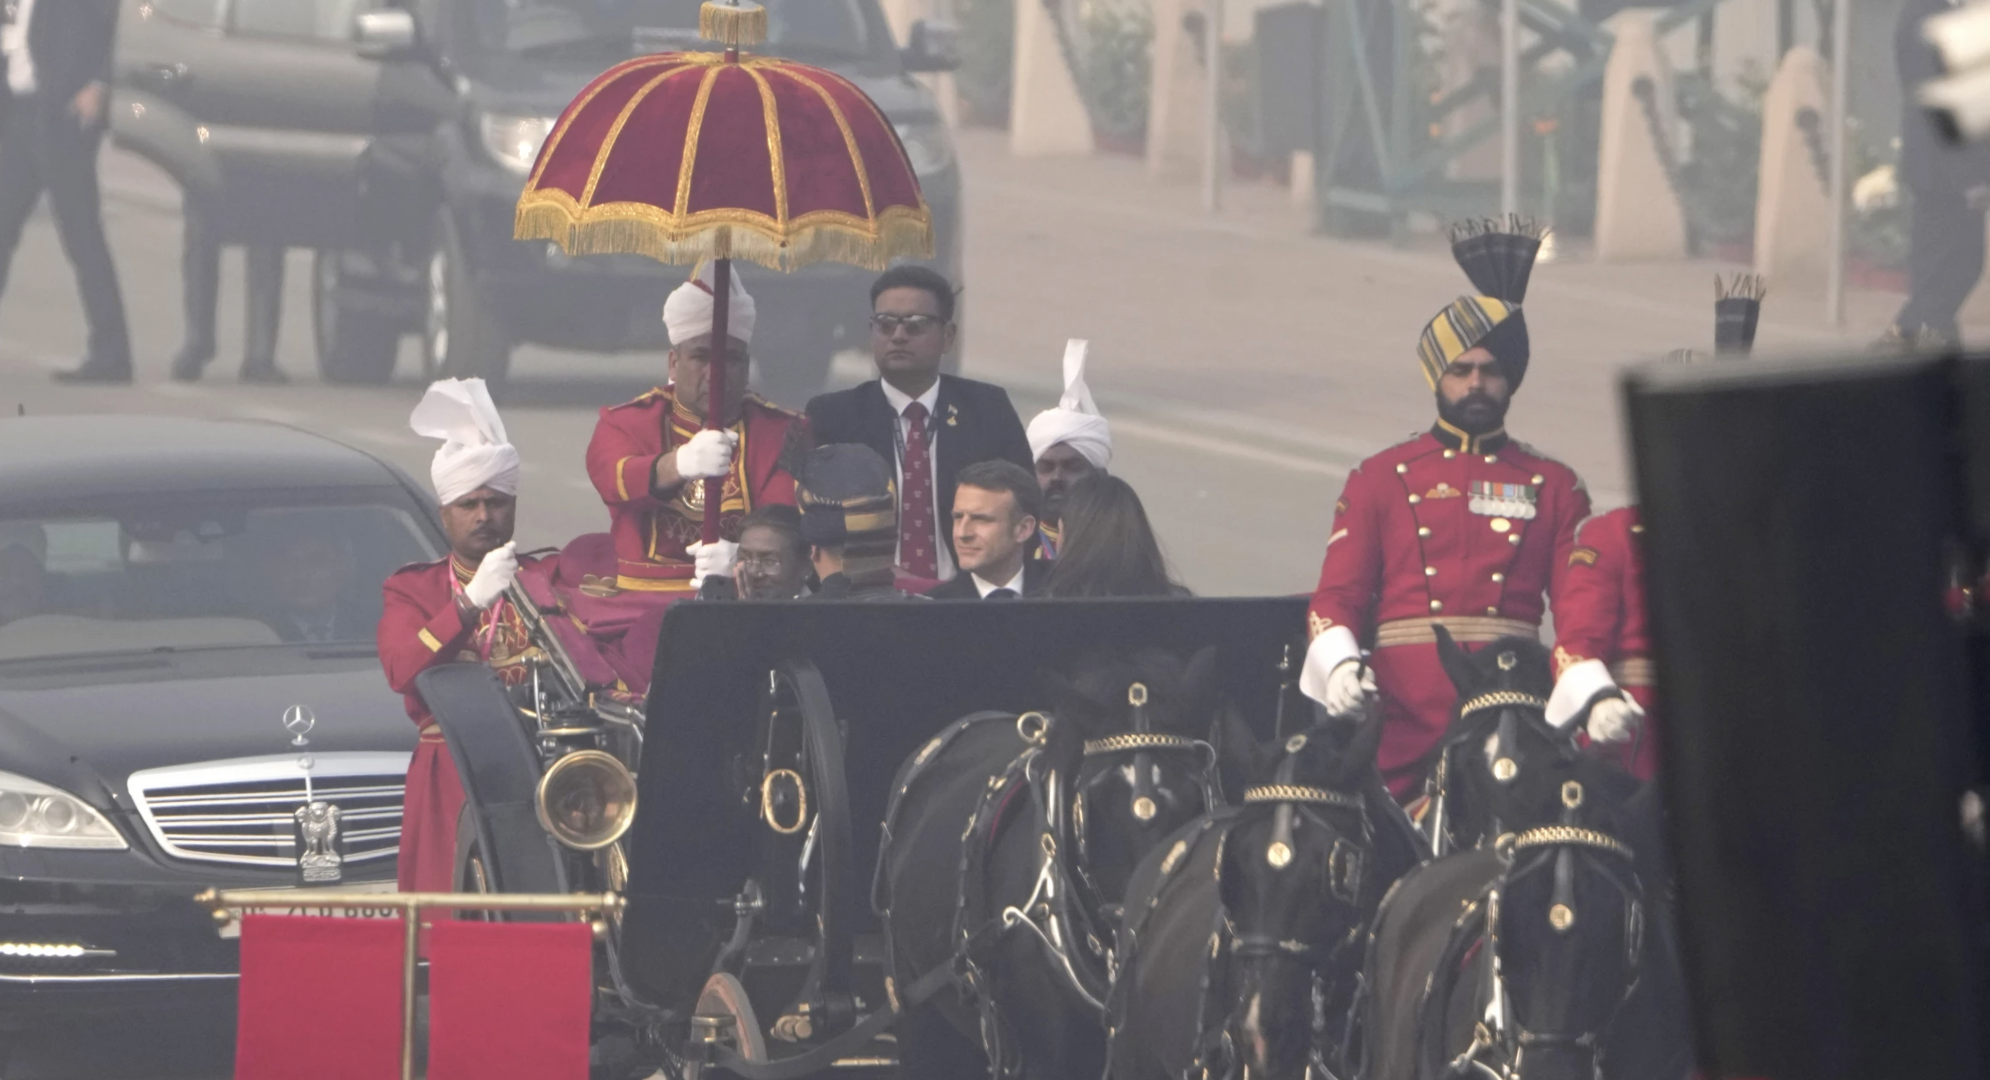 ▲印度总统同法国总统搭乘活动马车前往观礼台